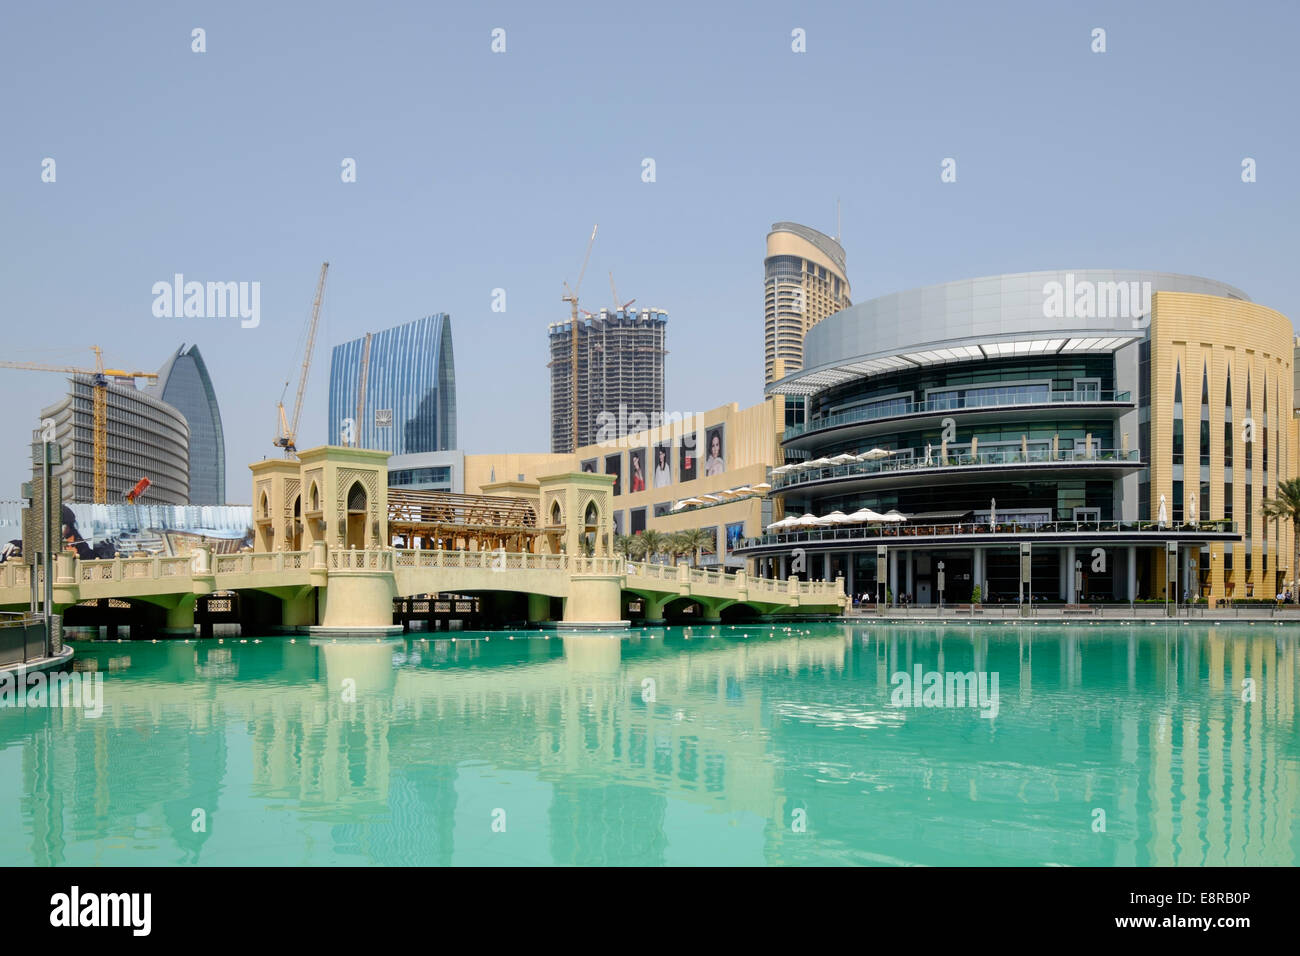 Außenseite der Dubai Mall und reich verzierte Brücke Kreuzung Teich in Dubai Vereinigte Arabische Emirate Stockfoto